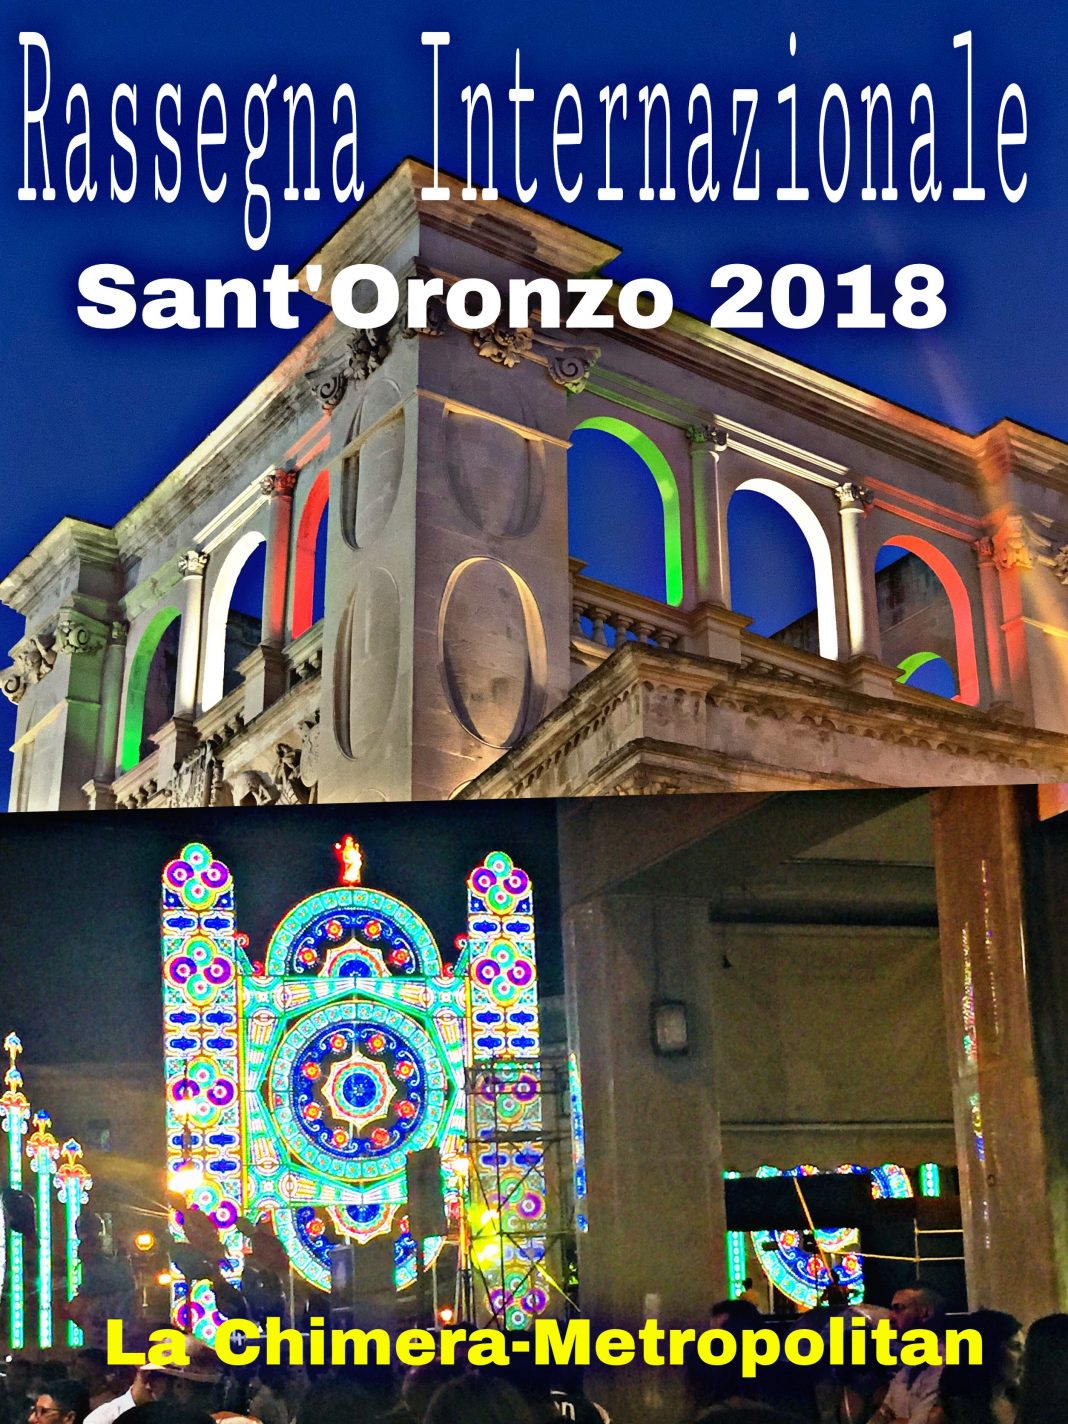 Sant’Oronzo 2018 23a edizionehttps://www.exibart.com/repository/media/eventi/2018/08/sant8217oronzo-2018-23a-edizione-1068x1424.jpg